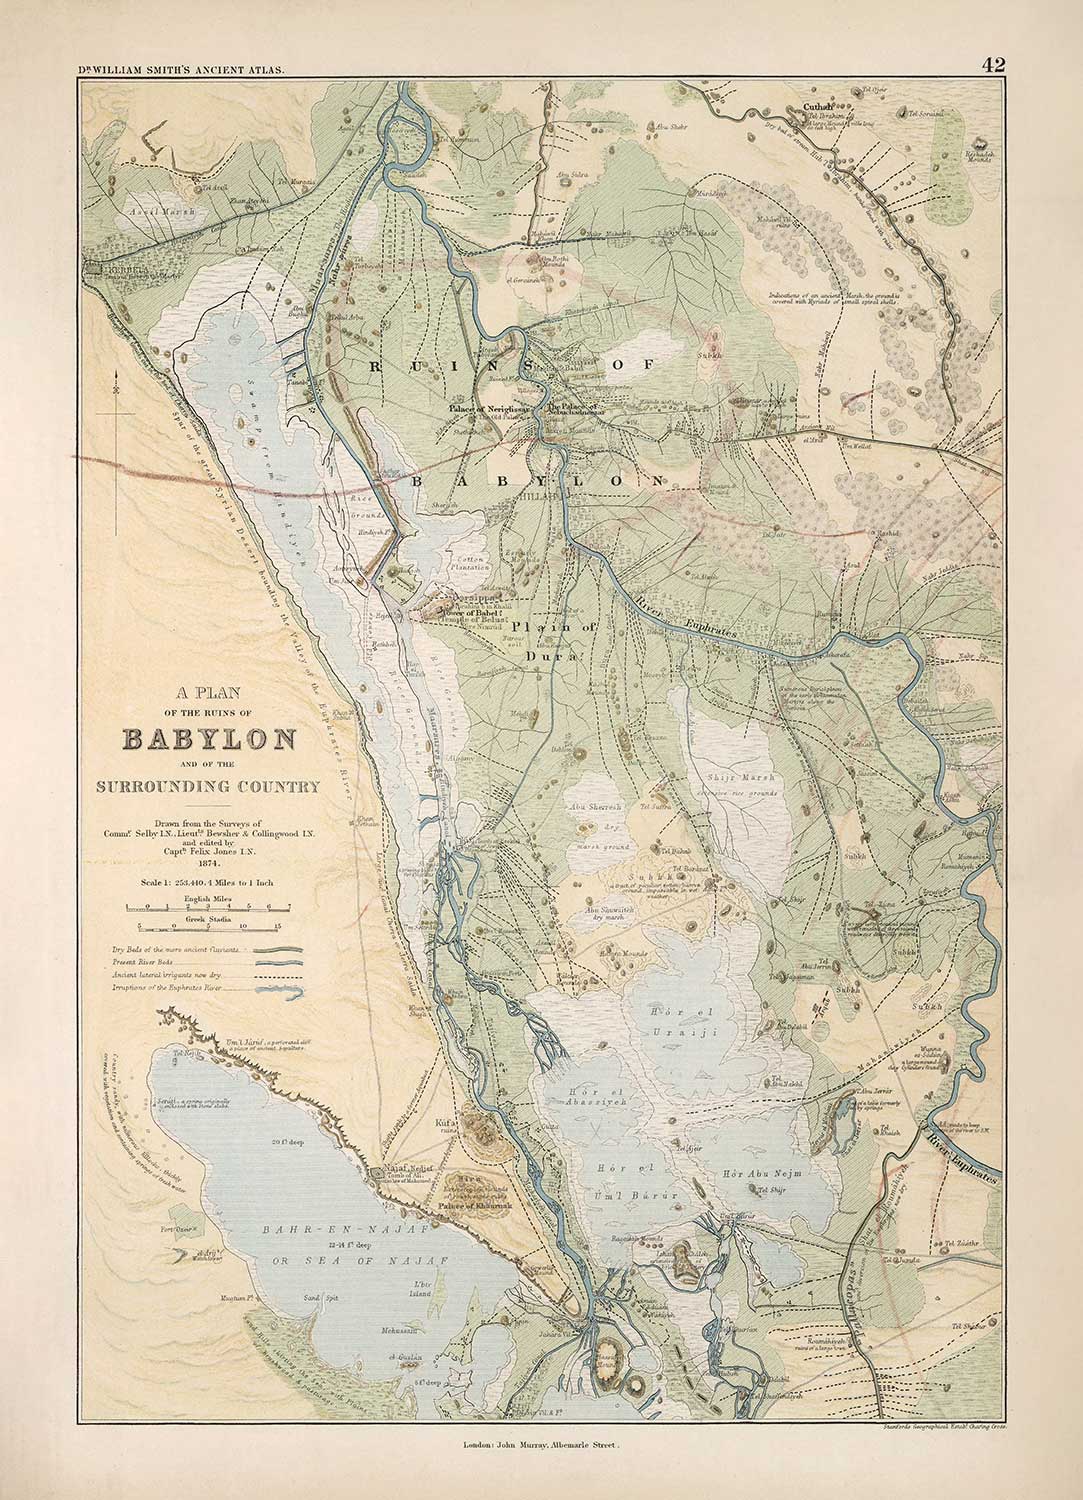 Alte Karte der antiken Stadt Babylon im Jahr 1874 von William Smith - Irak, Babylonisches Reich, Euphrat, Hillah